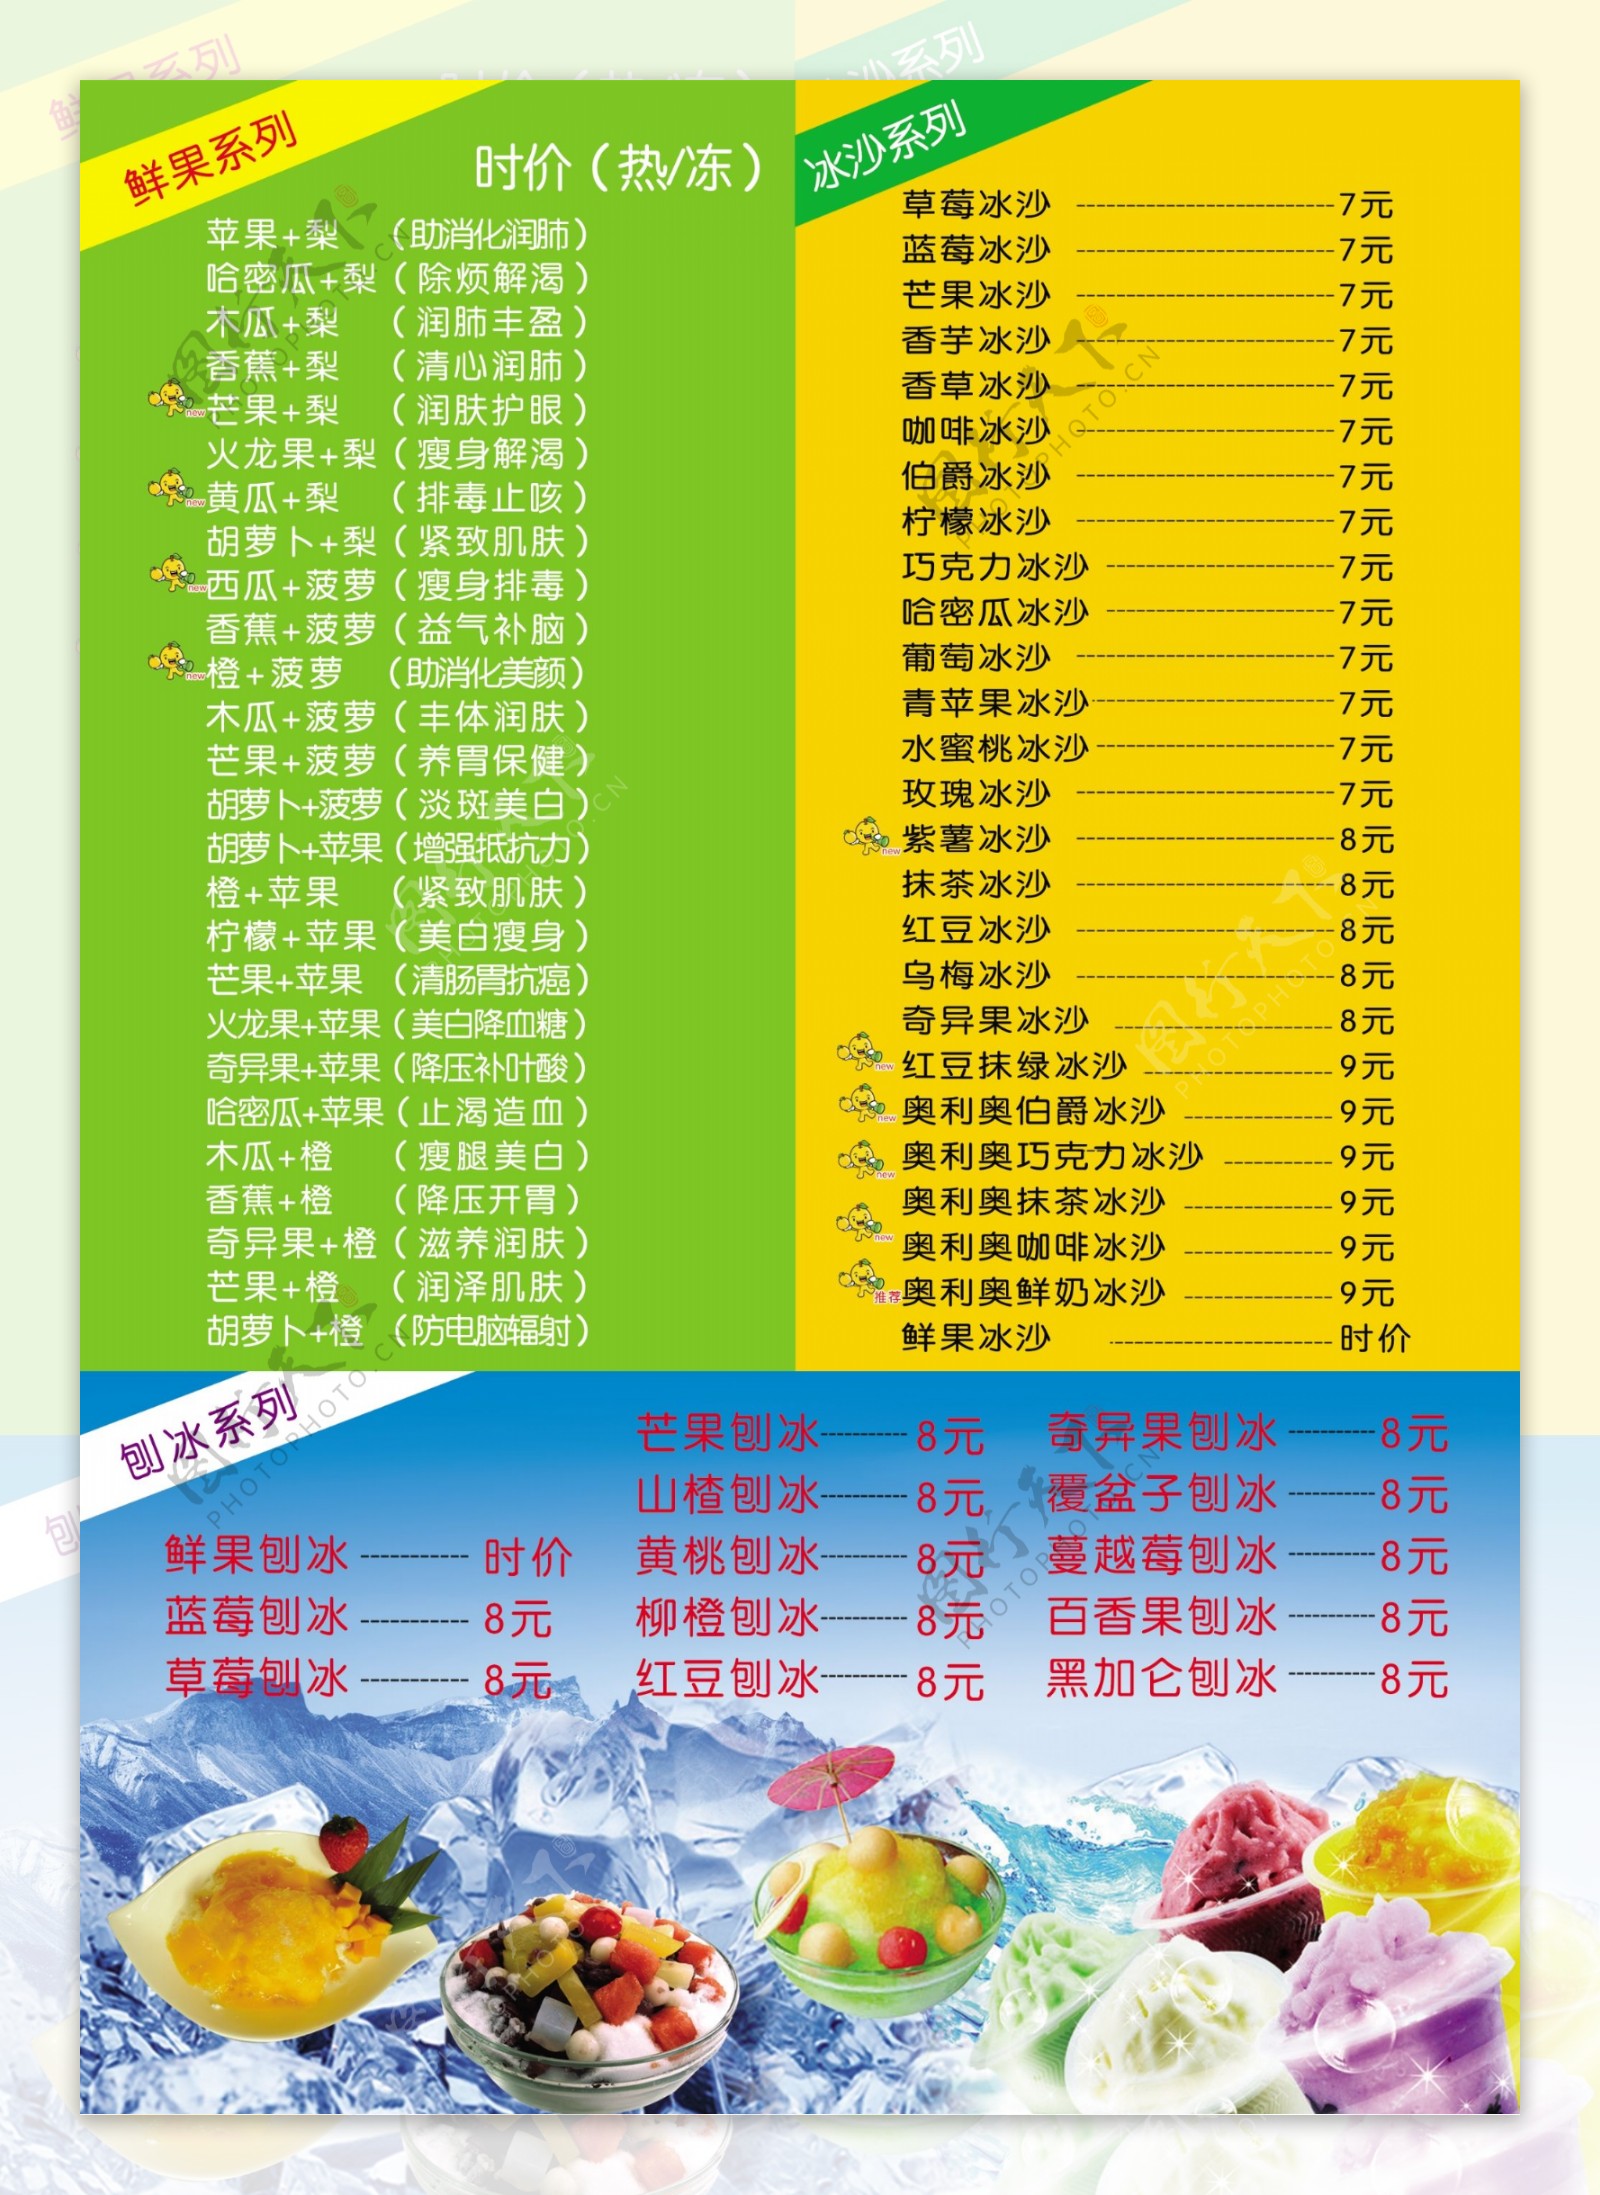 冰沙刨冰奶茶价格图片